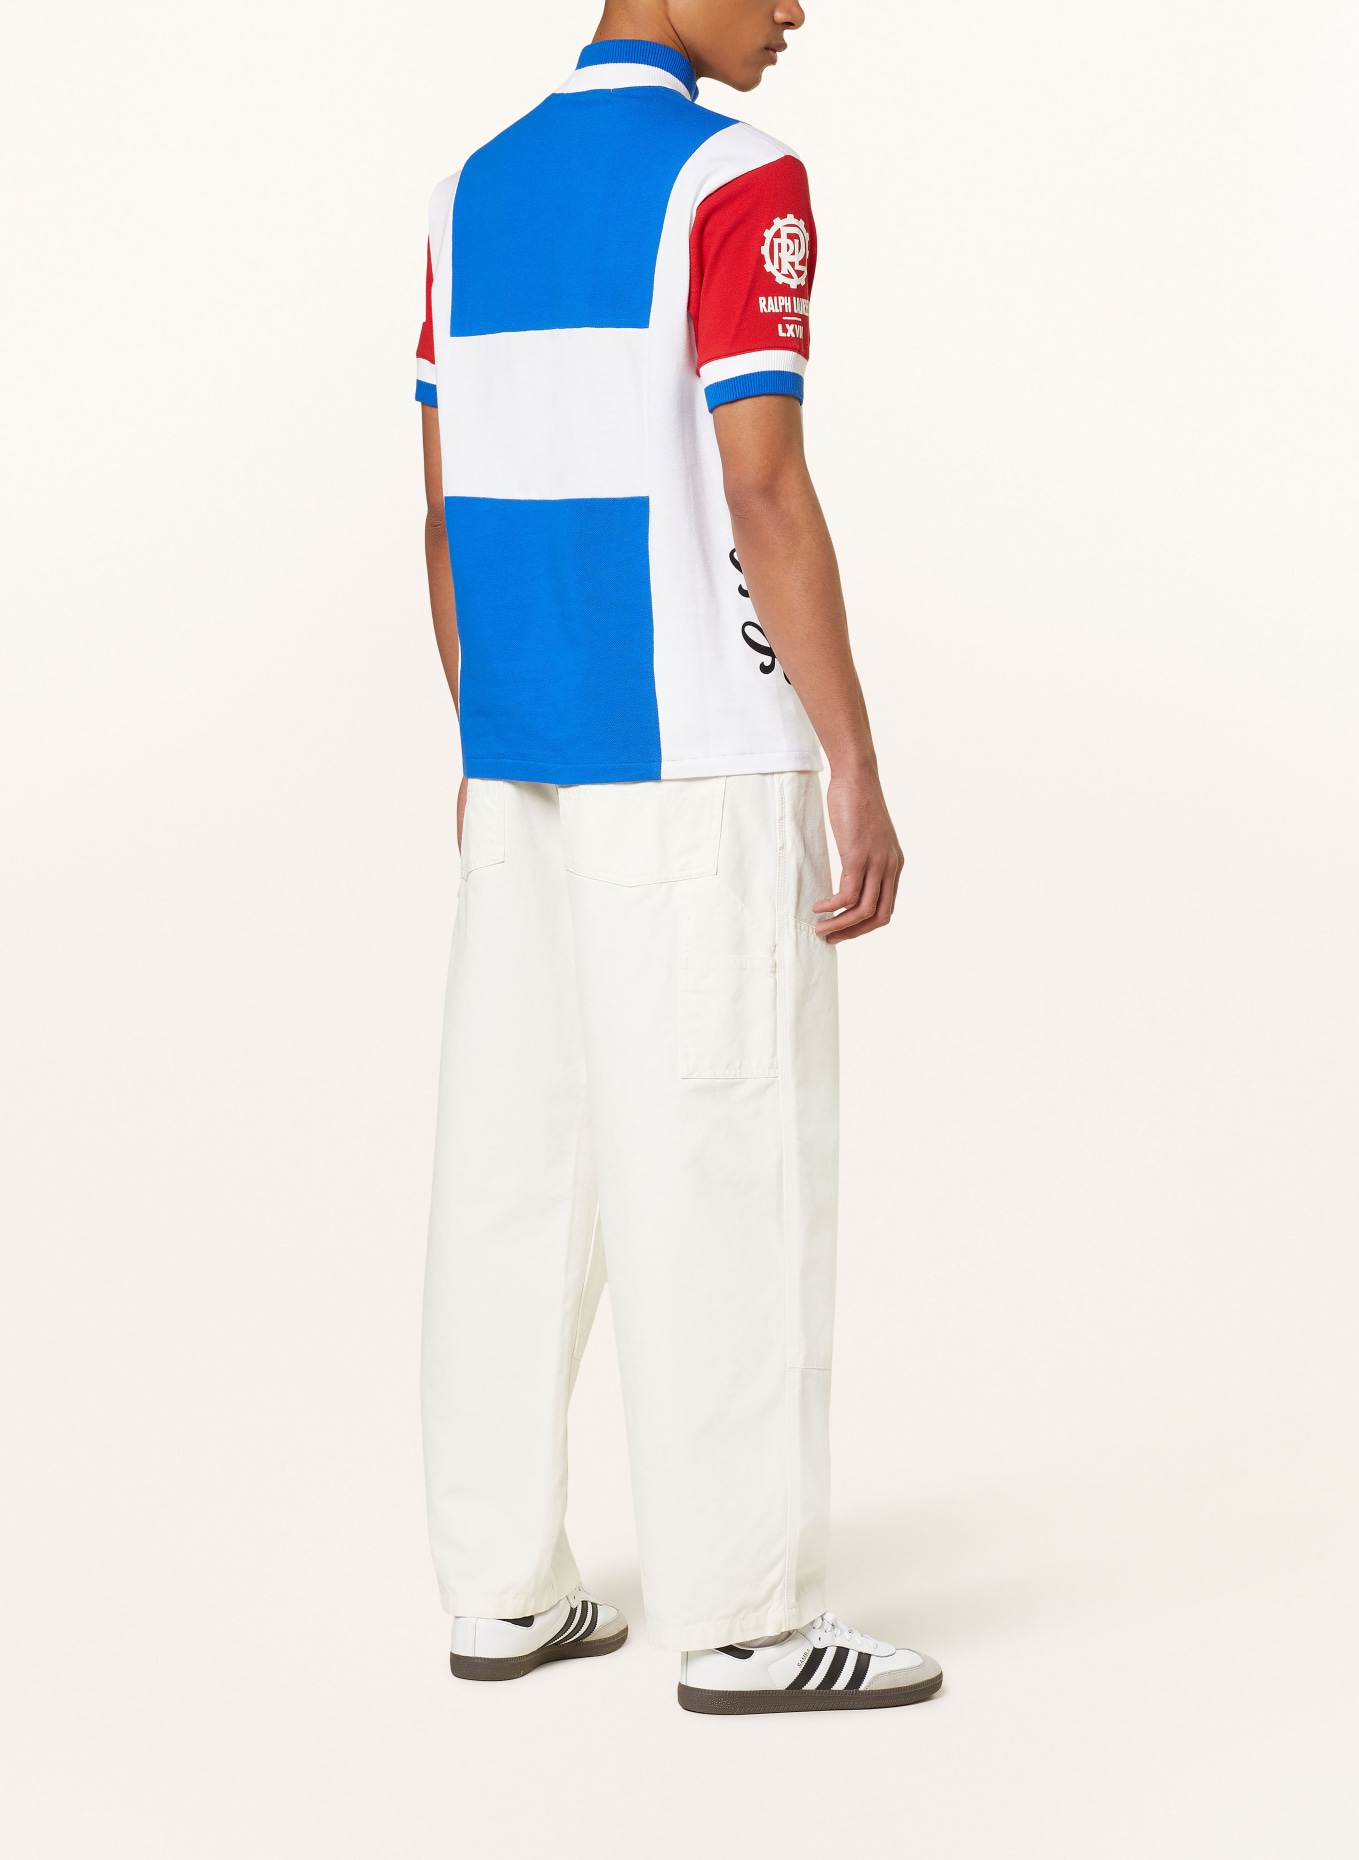 POLO SPORT Piqué-Poloshirt, Farbe: BLAU/ WEISS/ ROT (Bild 3)